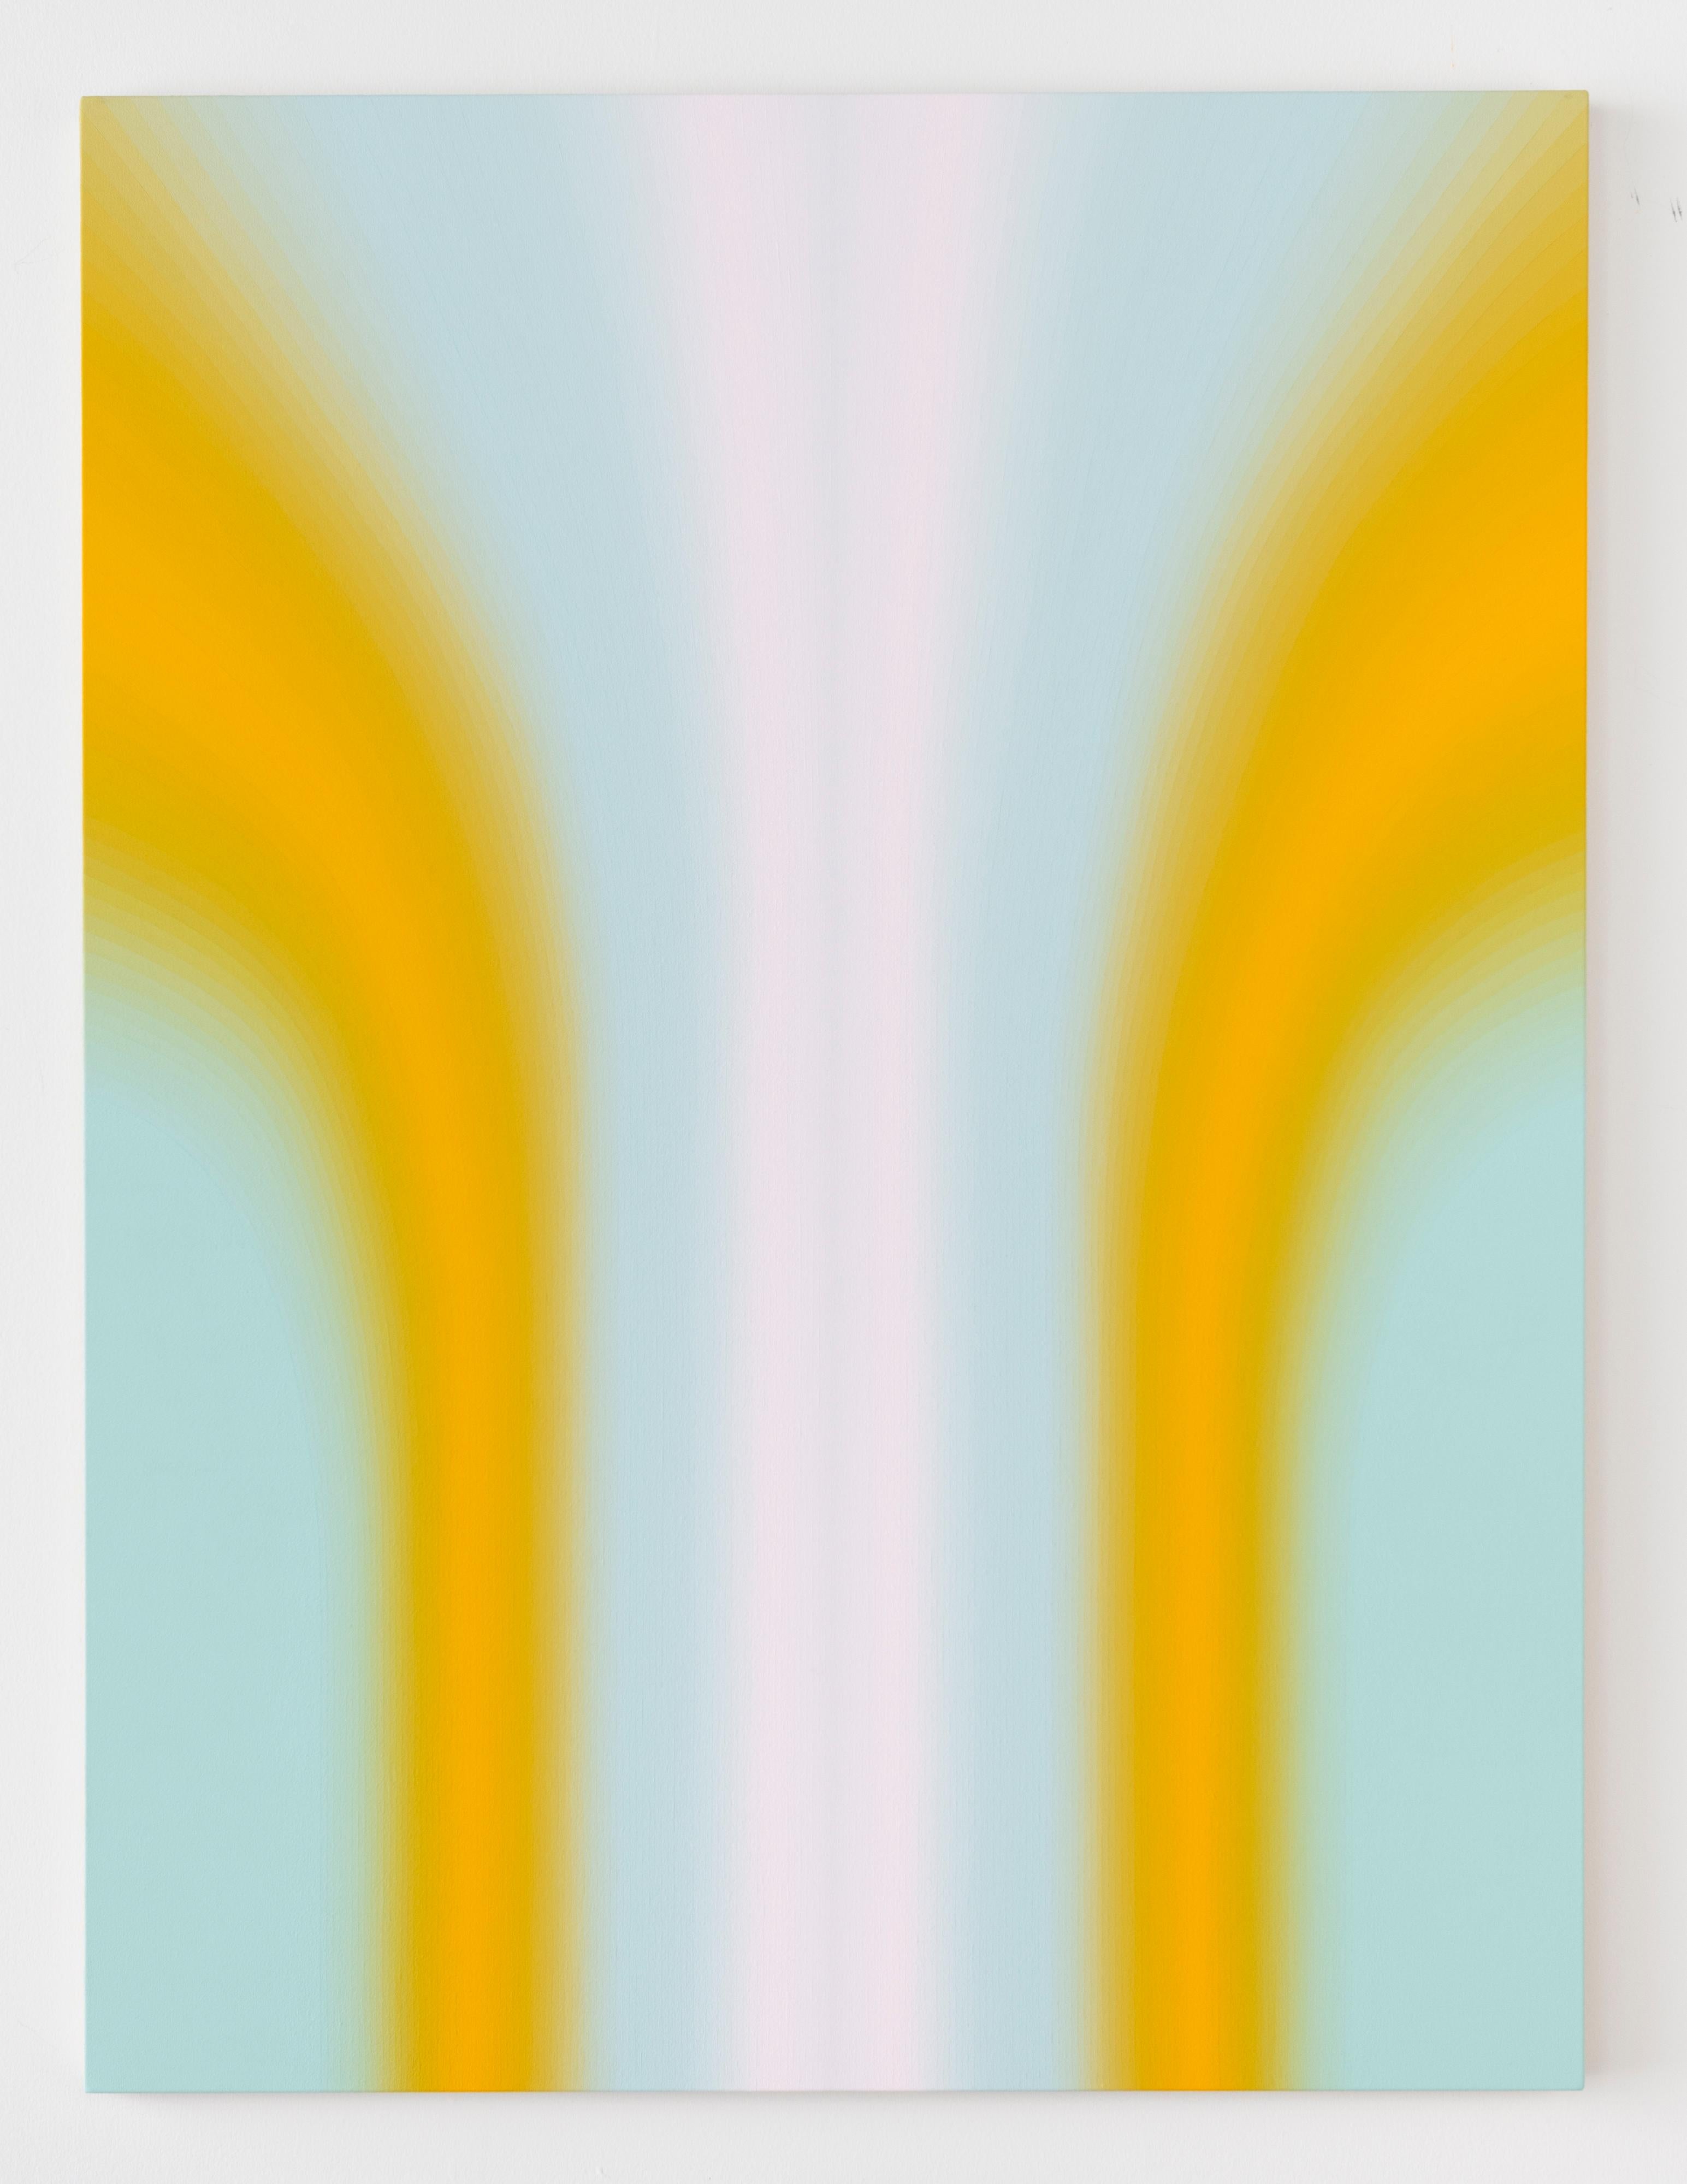 Sechs Shadow Valley Sechs, Hellgelgel Orange, Mintblau, Weiß Gradient Curving Shape – Painting von Audrey Stone